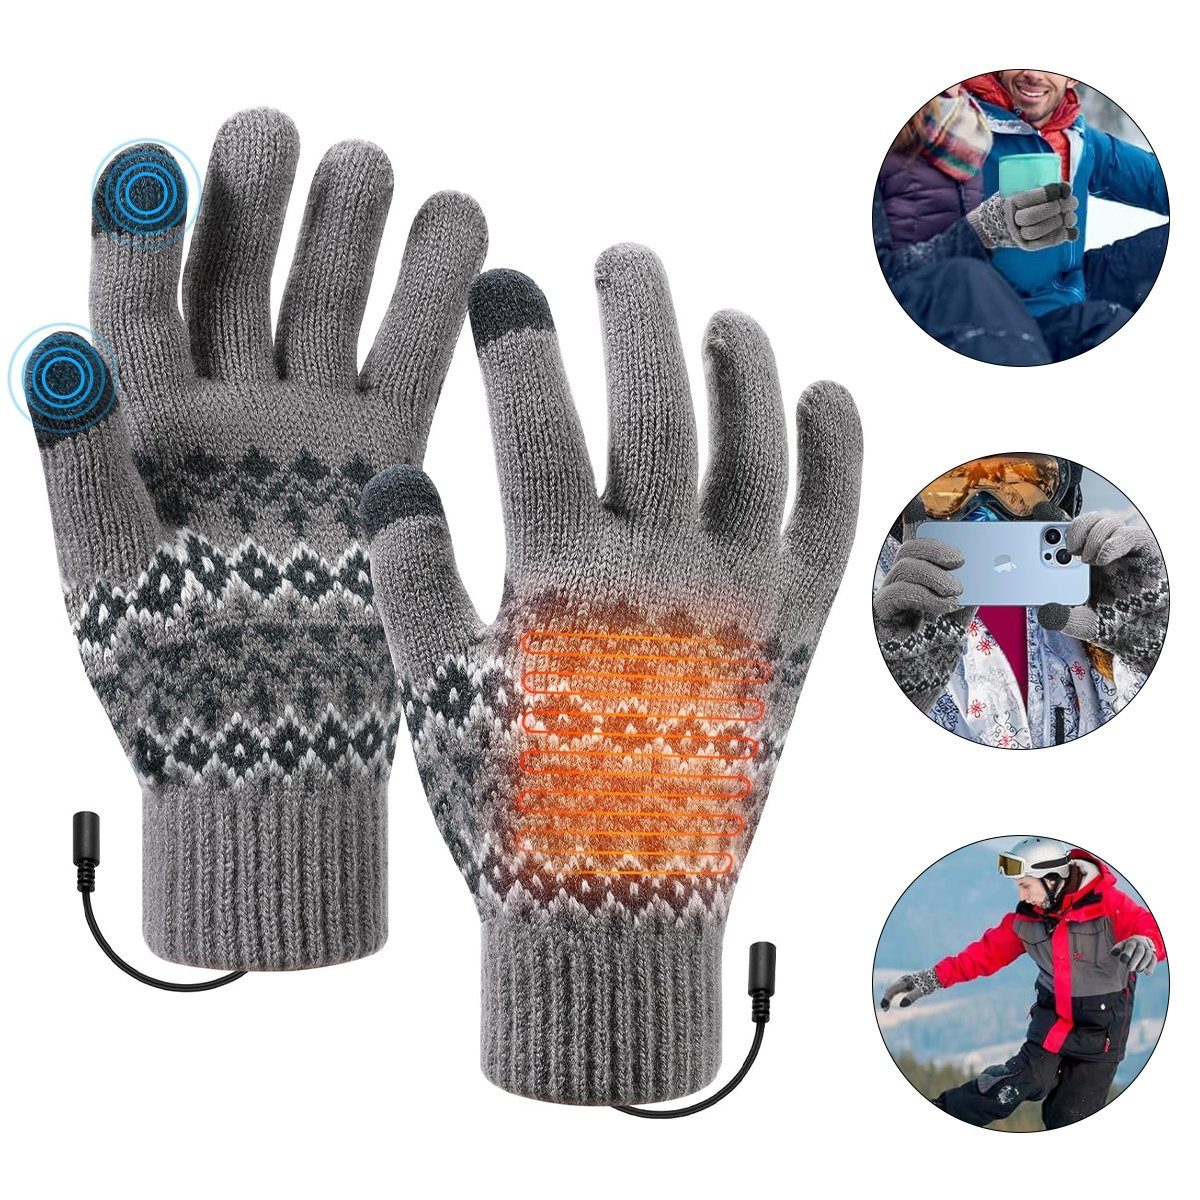 Hikeren Winter-Arbeitshandschuhe Beheizbare Handschuhe mit Schalter,3-stufige Temperatureinstellung Grau